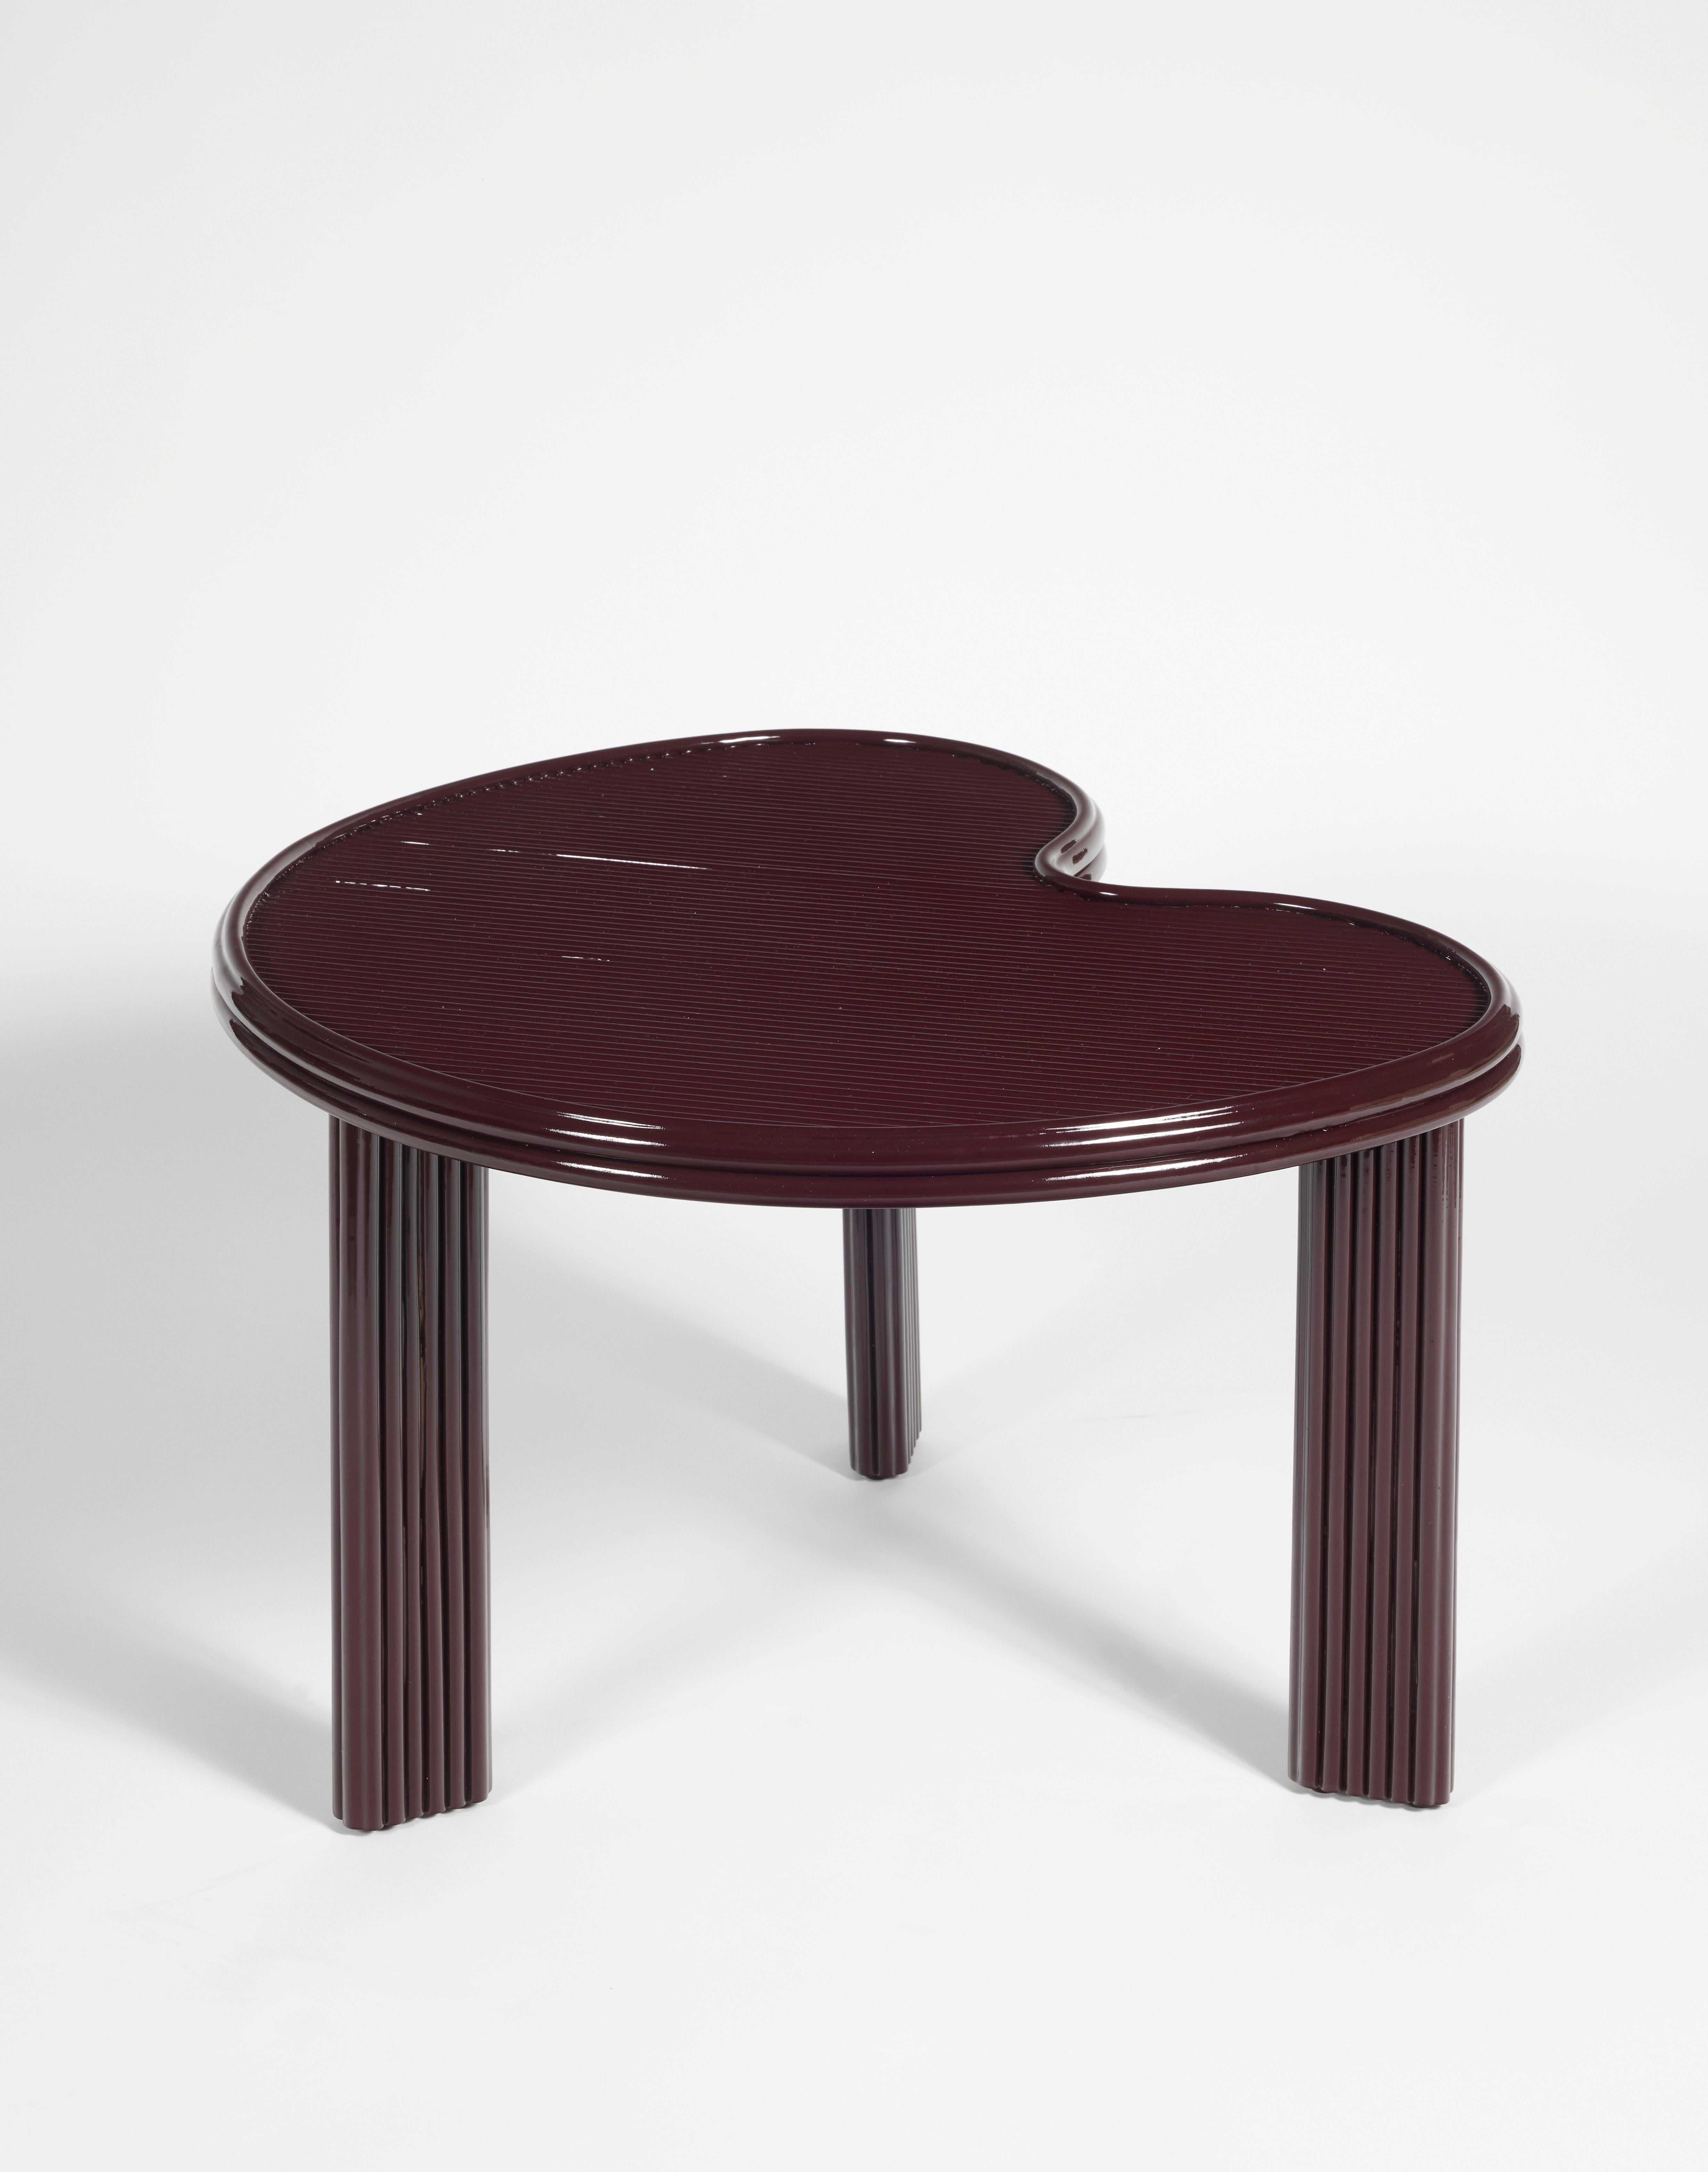 Lila lackierter Couchtisch aus Rattanstrang.

Dieser niedrige Tisch kann in anderen Größen, Ausführungen und Farben angepasst werden.